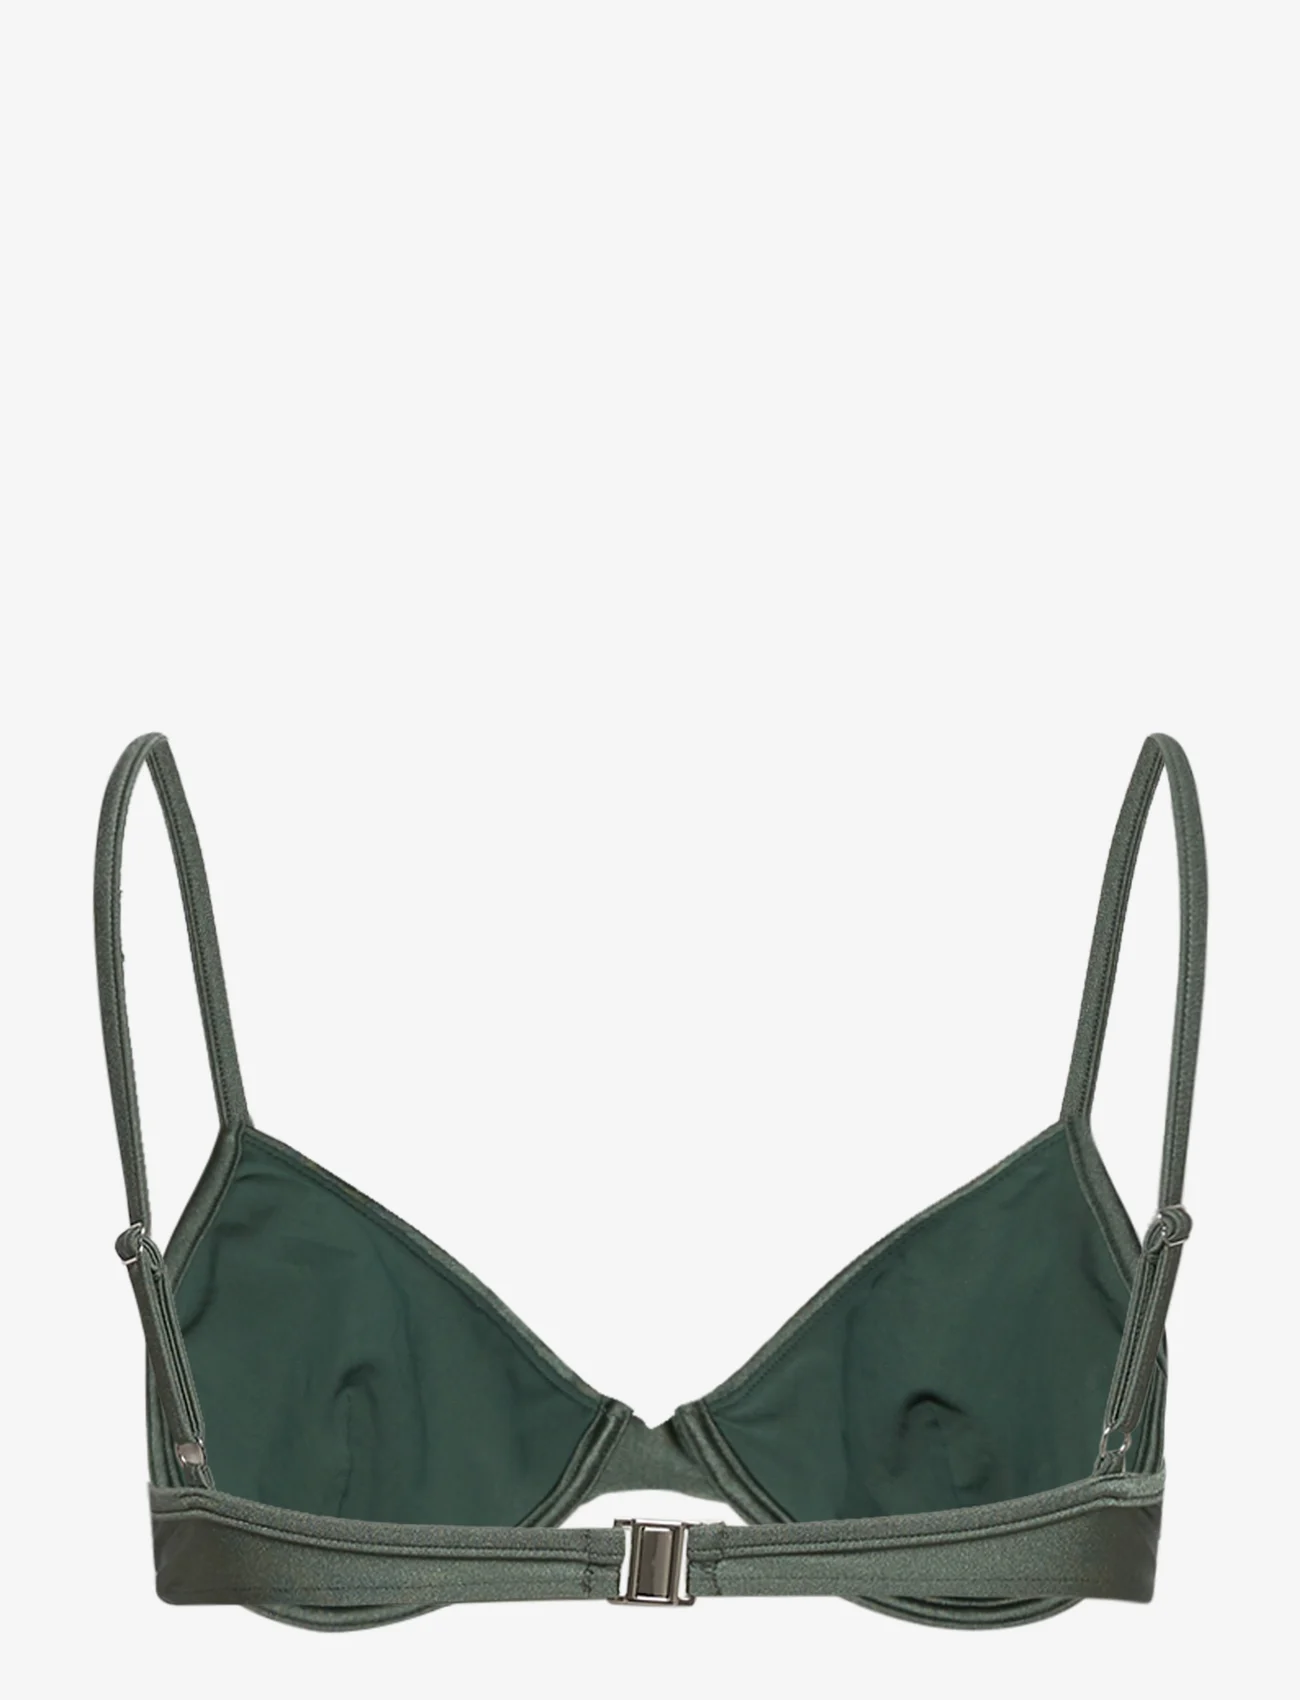 Filippa K - Shimmer Underwire Top - bikinitoppar med bygel - pale green - 1